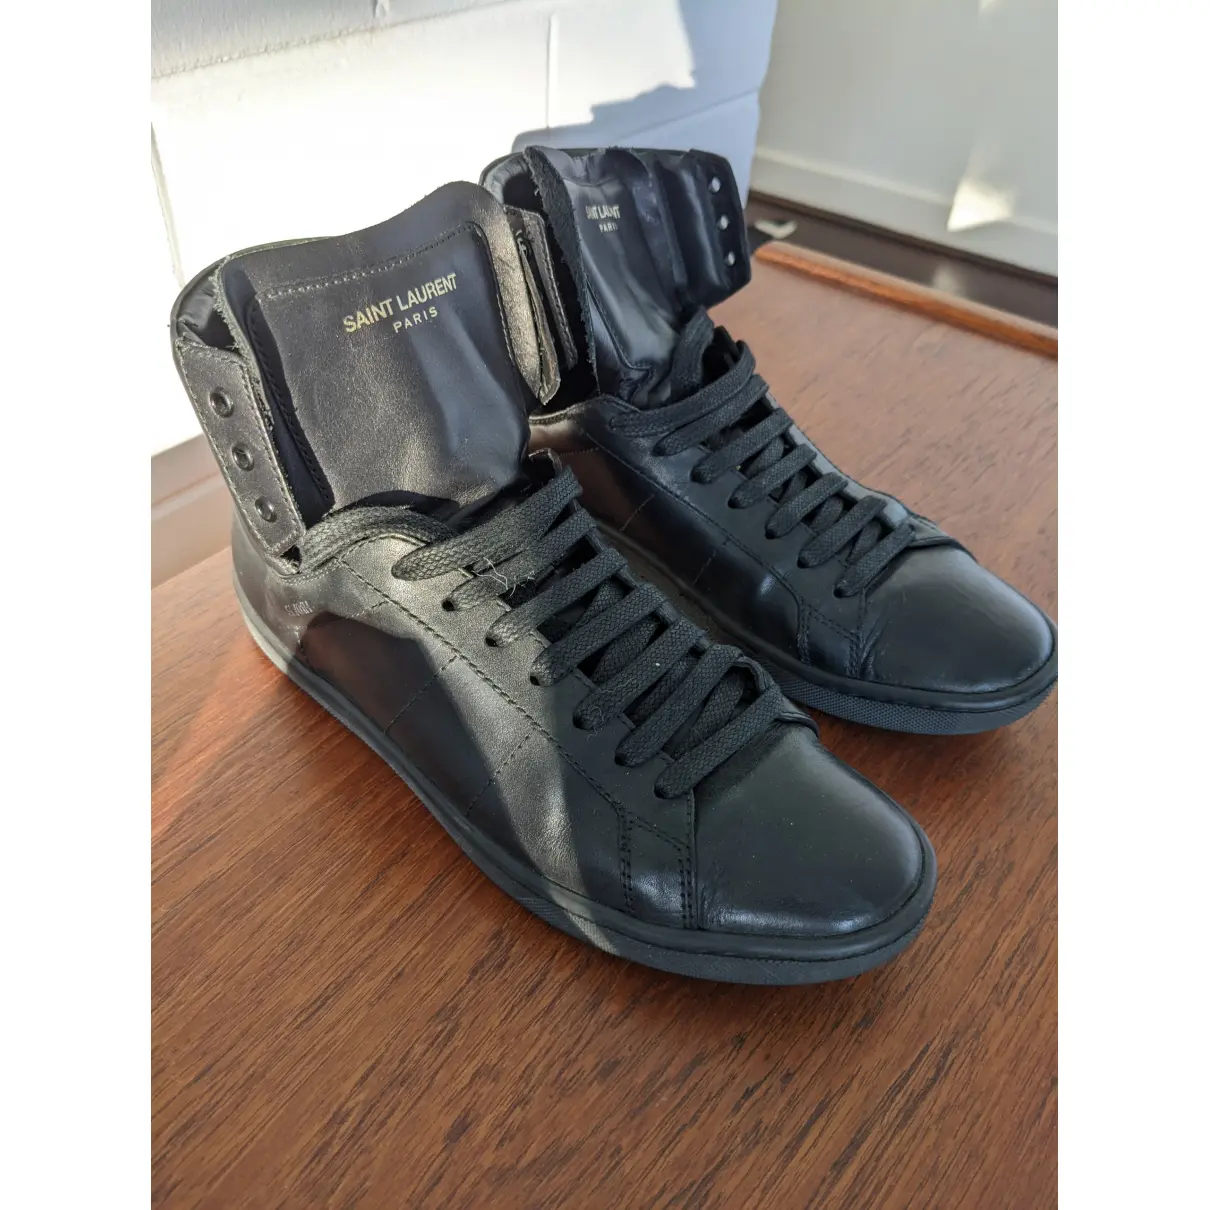 Buy Saint Laurent SL/01 leather trainers online